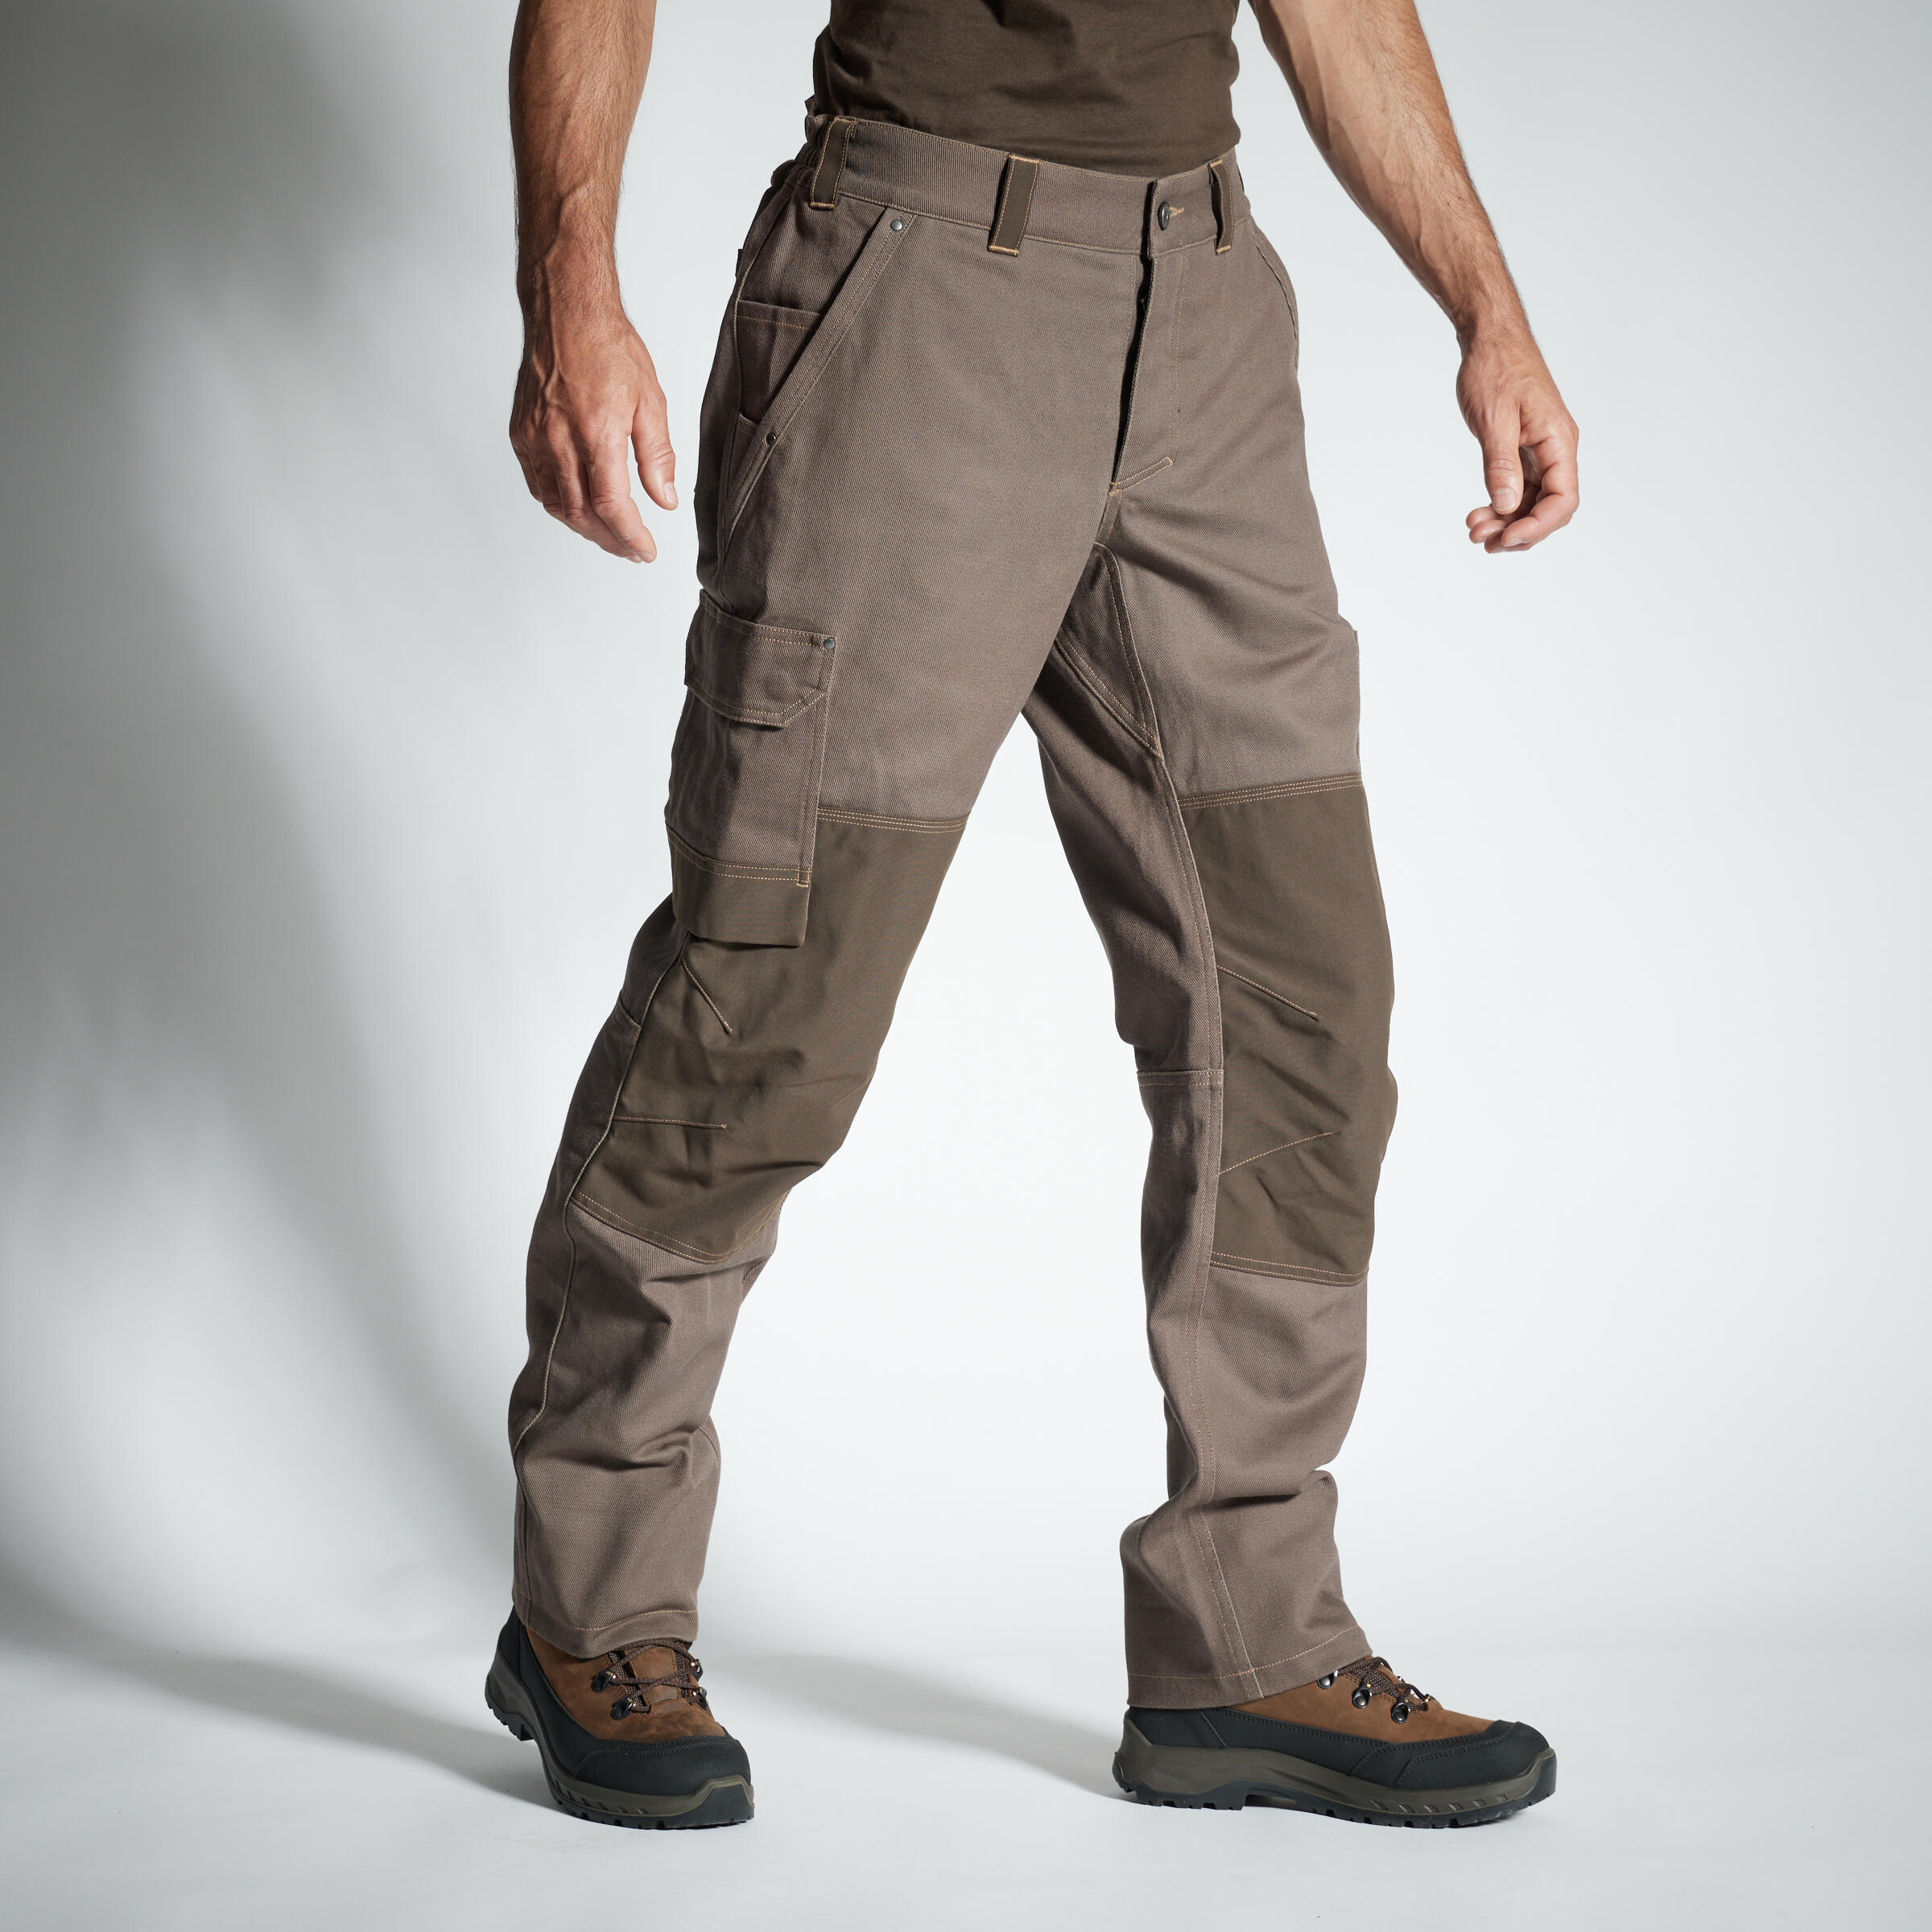 Pantalon 500 Călduros Rezistent Maro Bărbați La Oferta Online decathlon imagine La Oferta Online